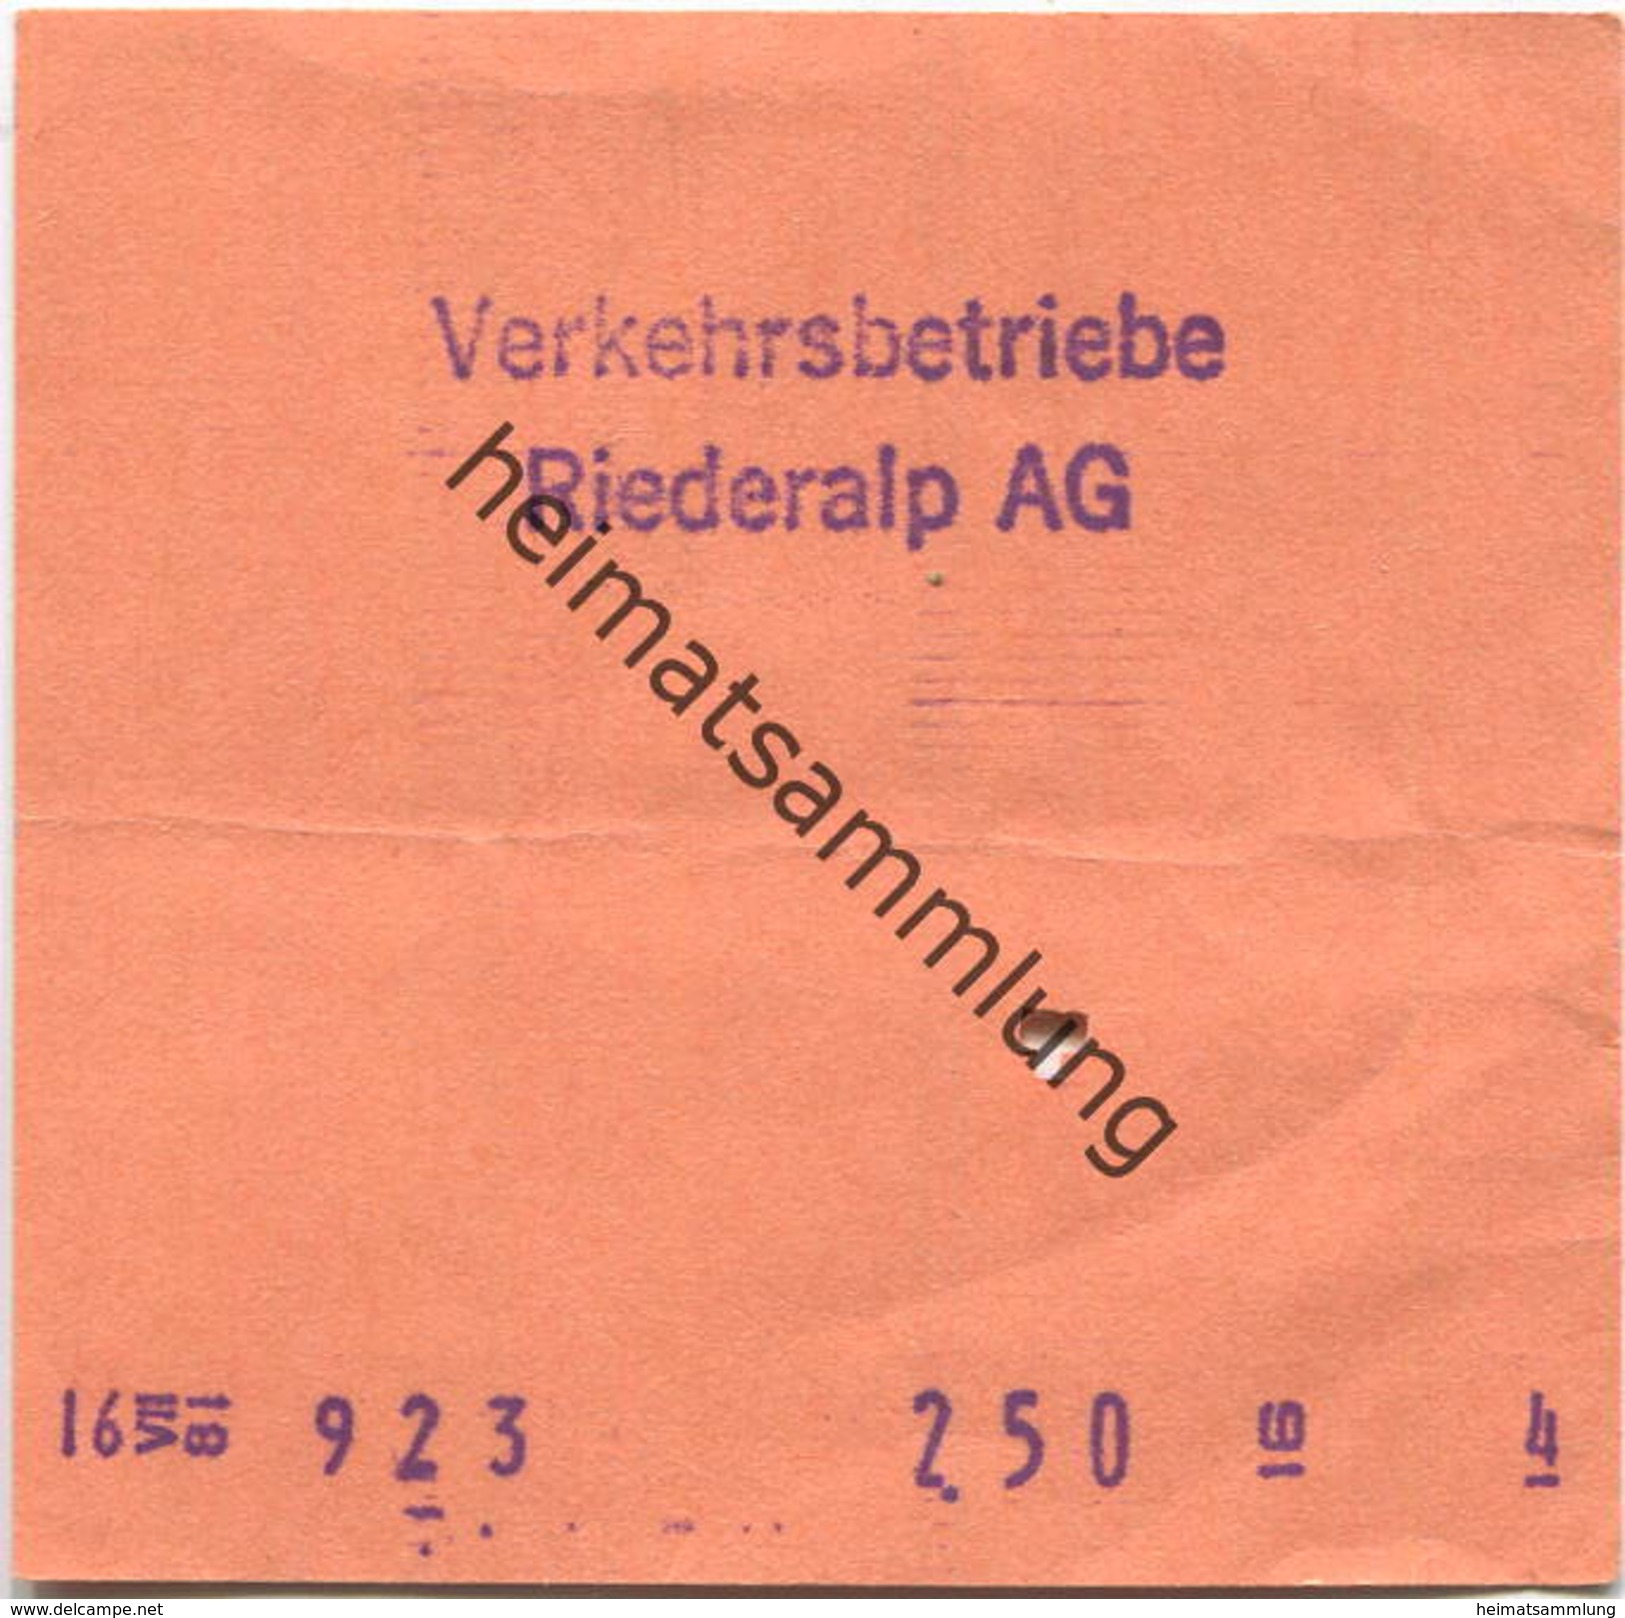 Schweiz - Verkehrsbetriebe Riederalp AG - Fahrschein - Europe